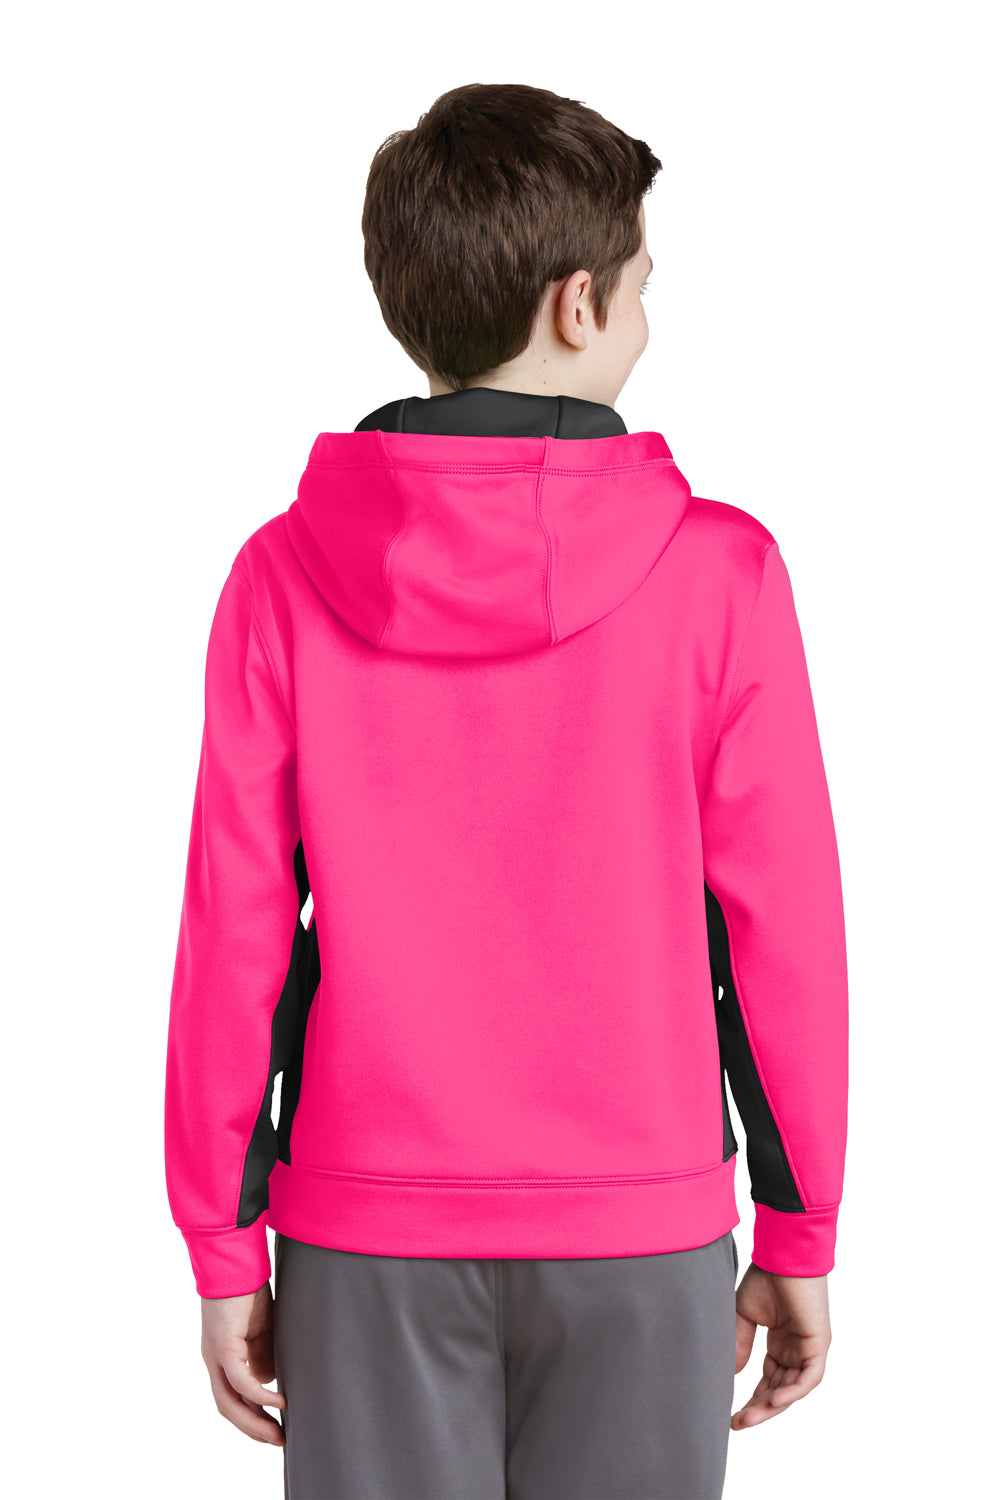 Sport-Tek YST235 Youth Sport-Wick Moisture Wicking Fleece Hooded Sweatshirt Hoodie Neon Pink/Black Back